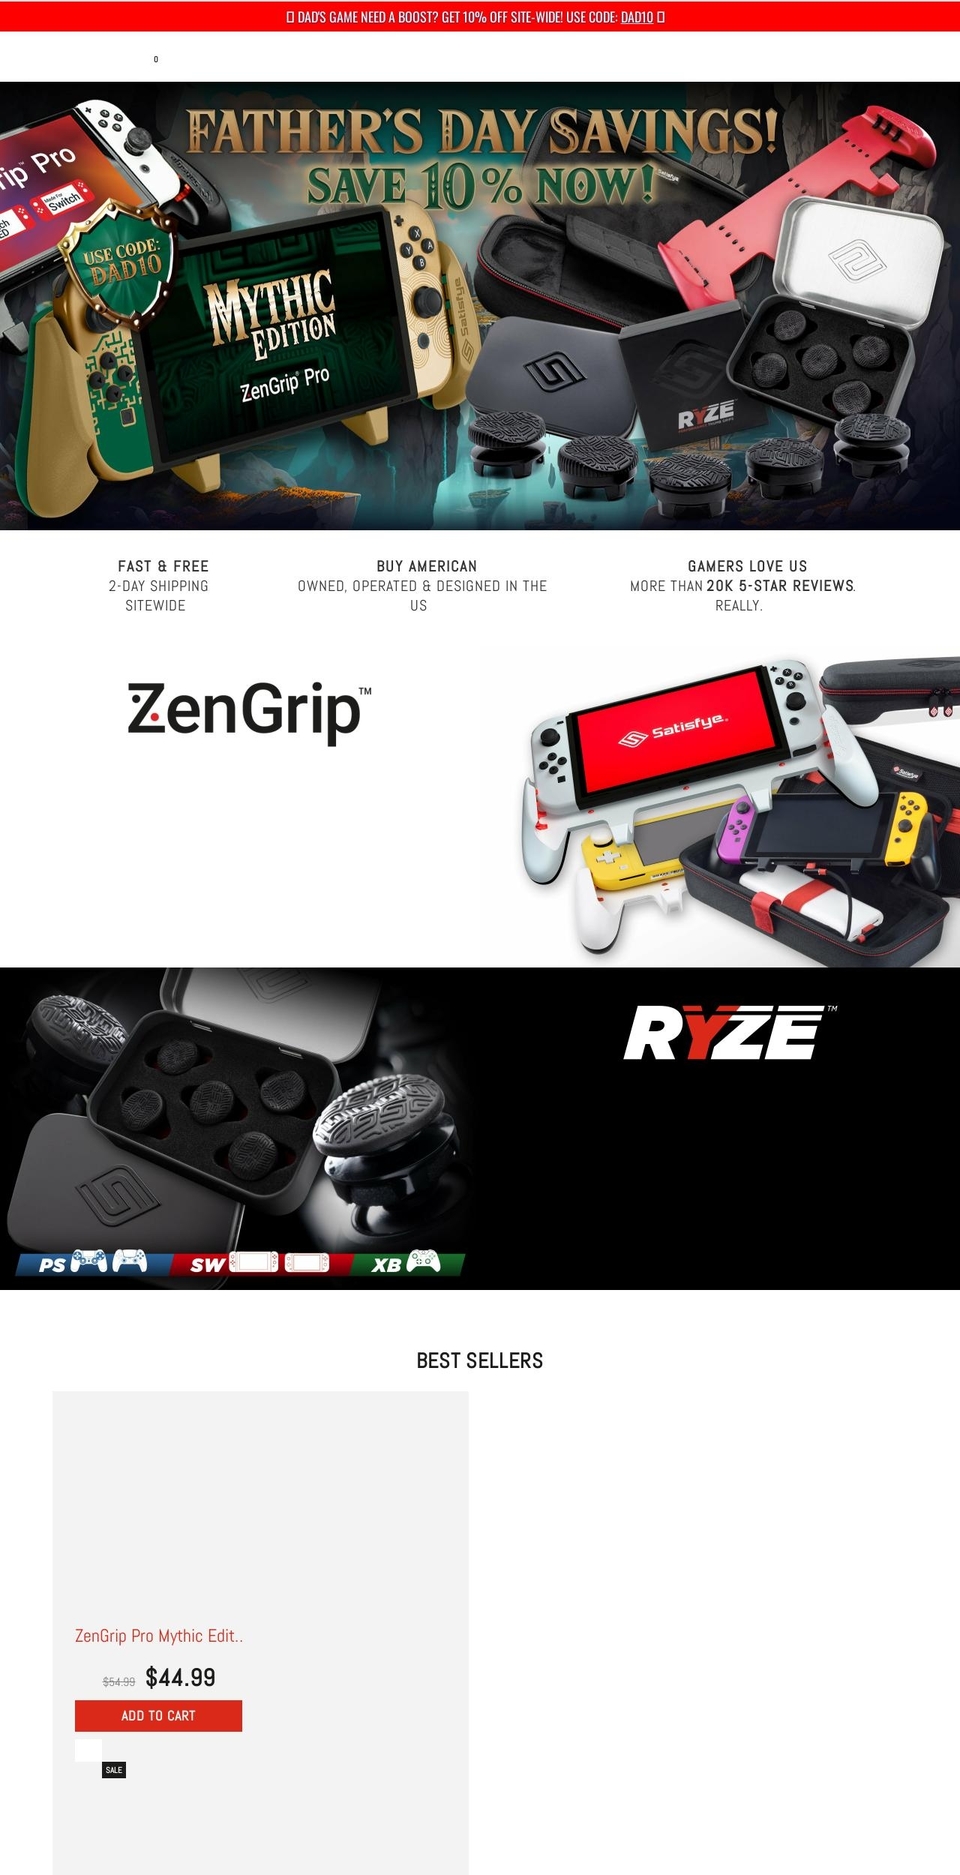 Zeexo Shopify theme site example getsatisfyed.com